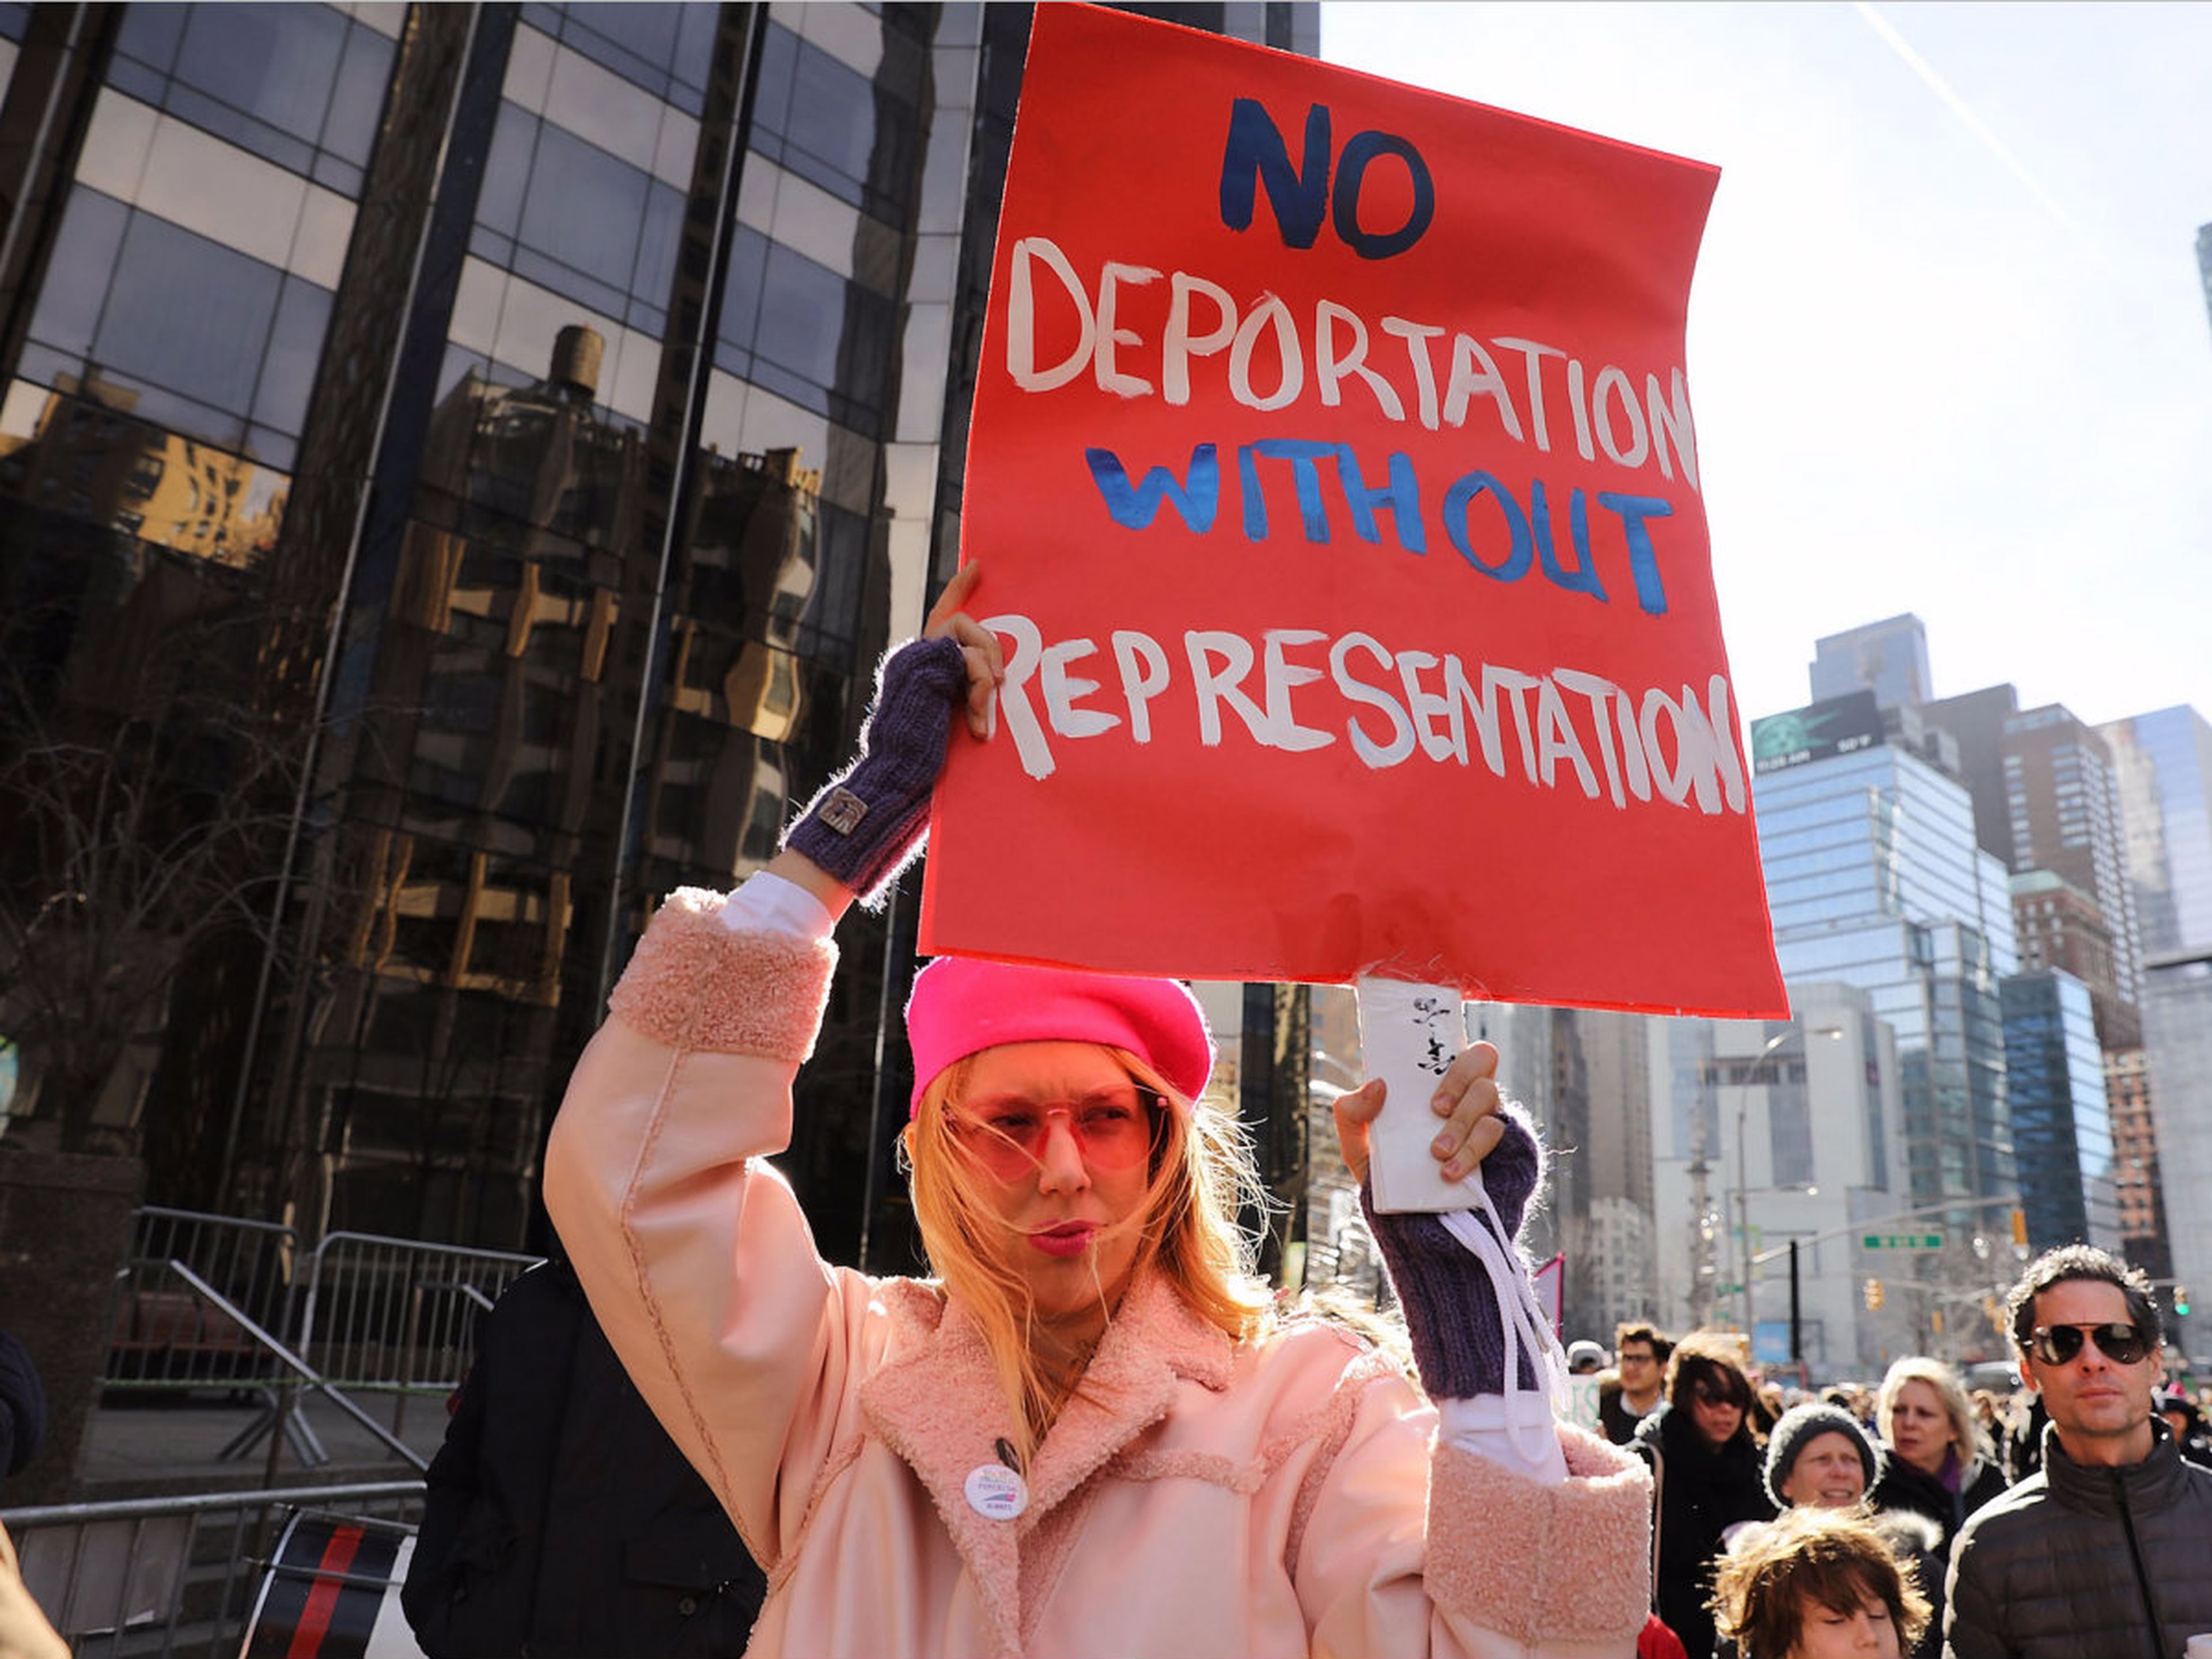 Los manifestantes también protestan contra la deportación inmigrantes.